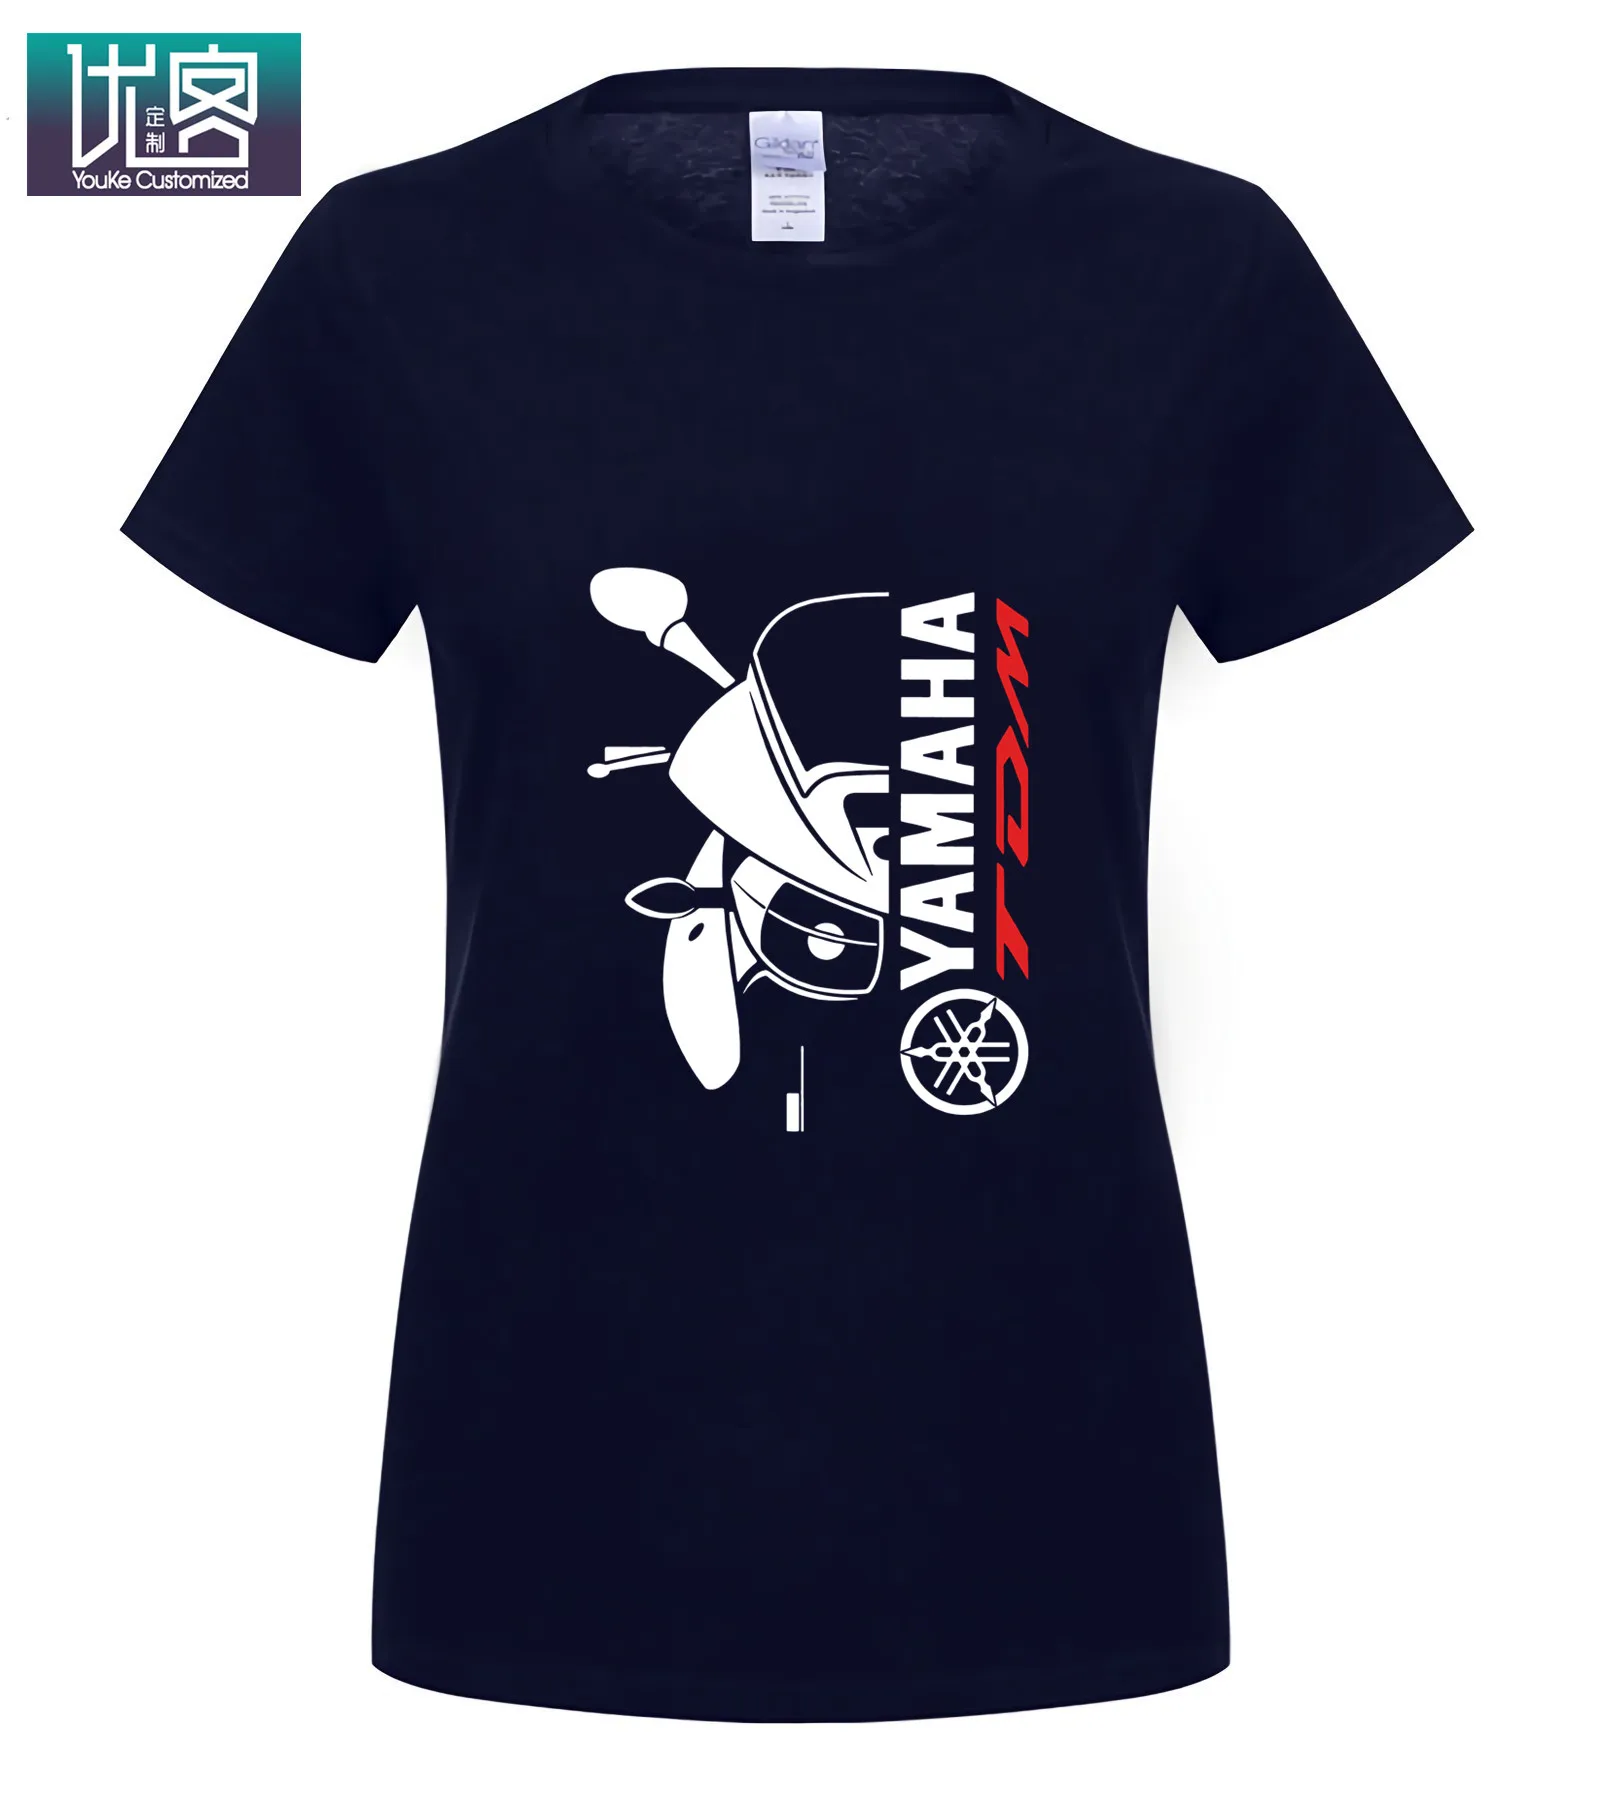 Двухсторонняя футболка Yama Tdm 900 Авто Черная Мужская футболка Летняя мужская футболка с круглым вырезом модные дешевые футболки на заказ - Цвет: Women Navy